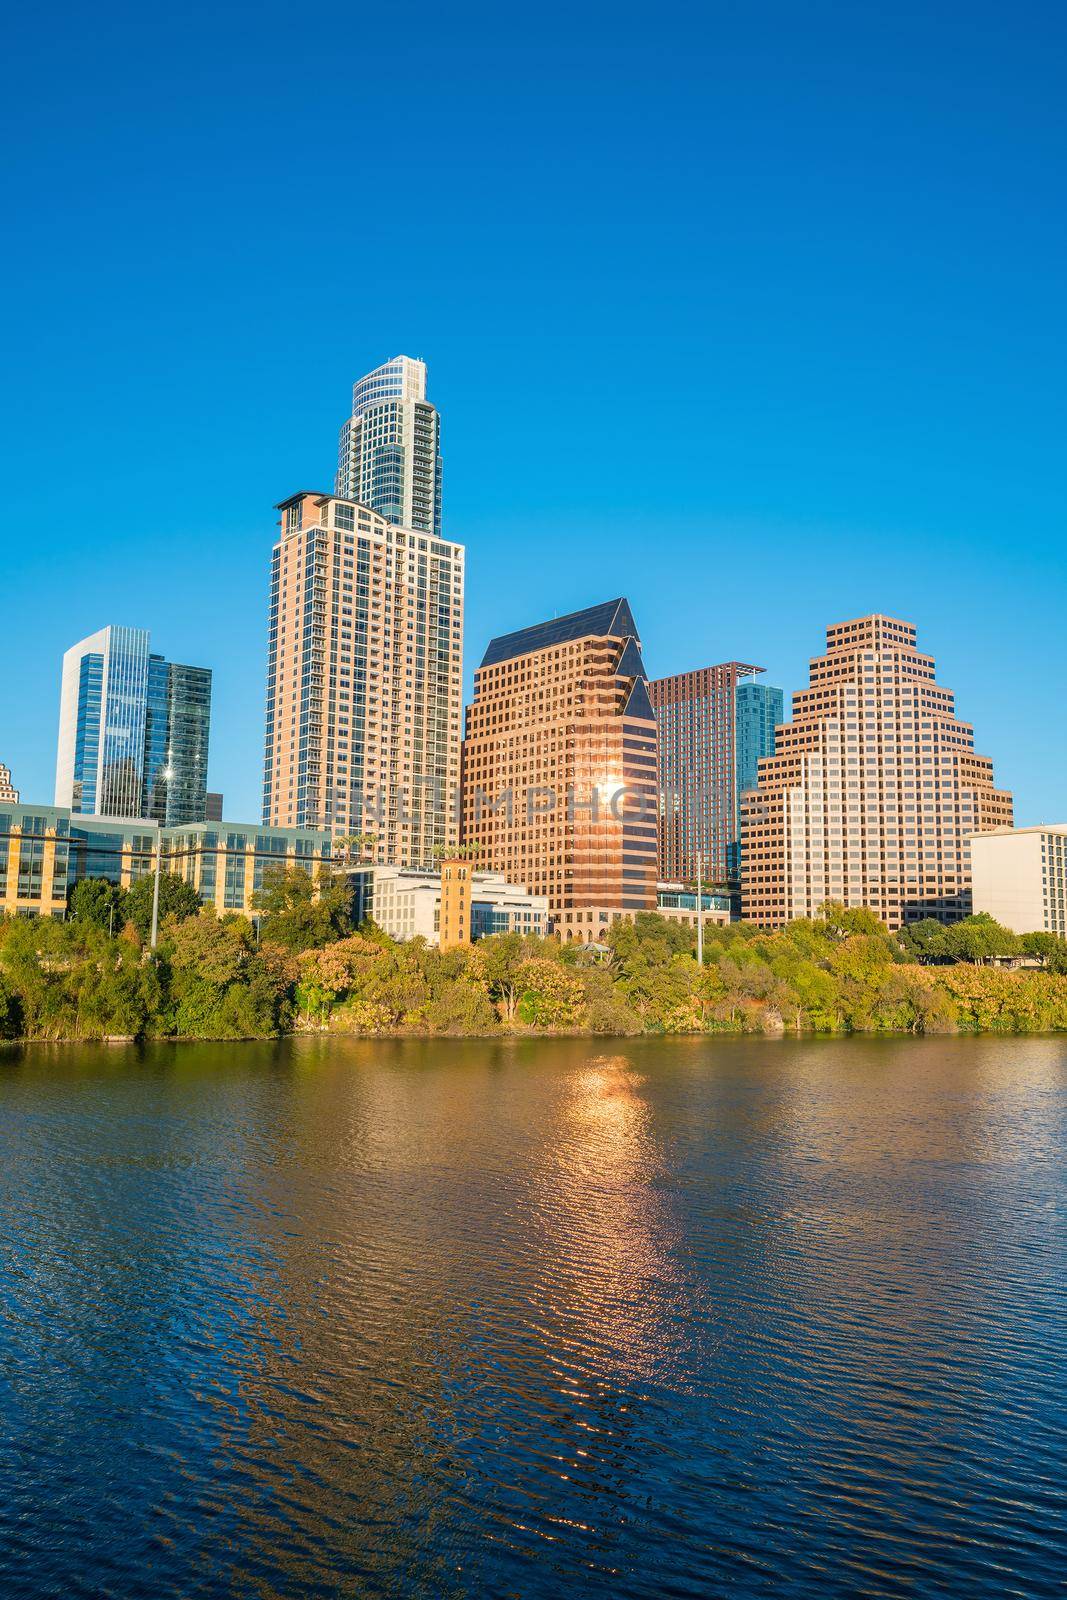 Downtown Skyline of Austin, Texas by f11photo